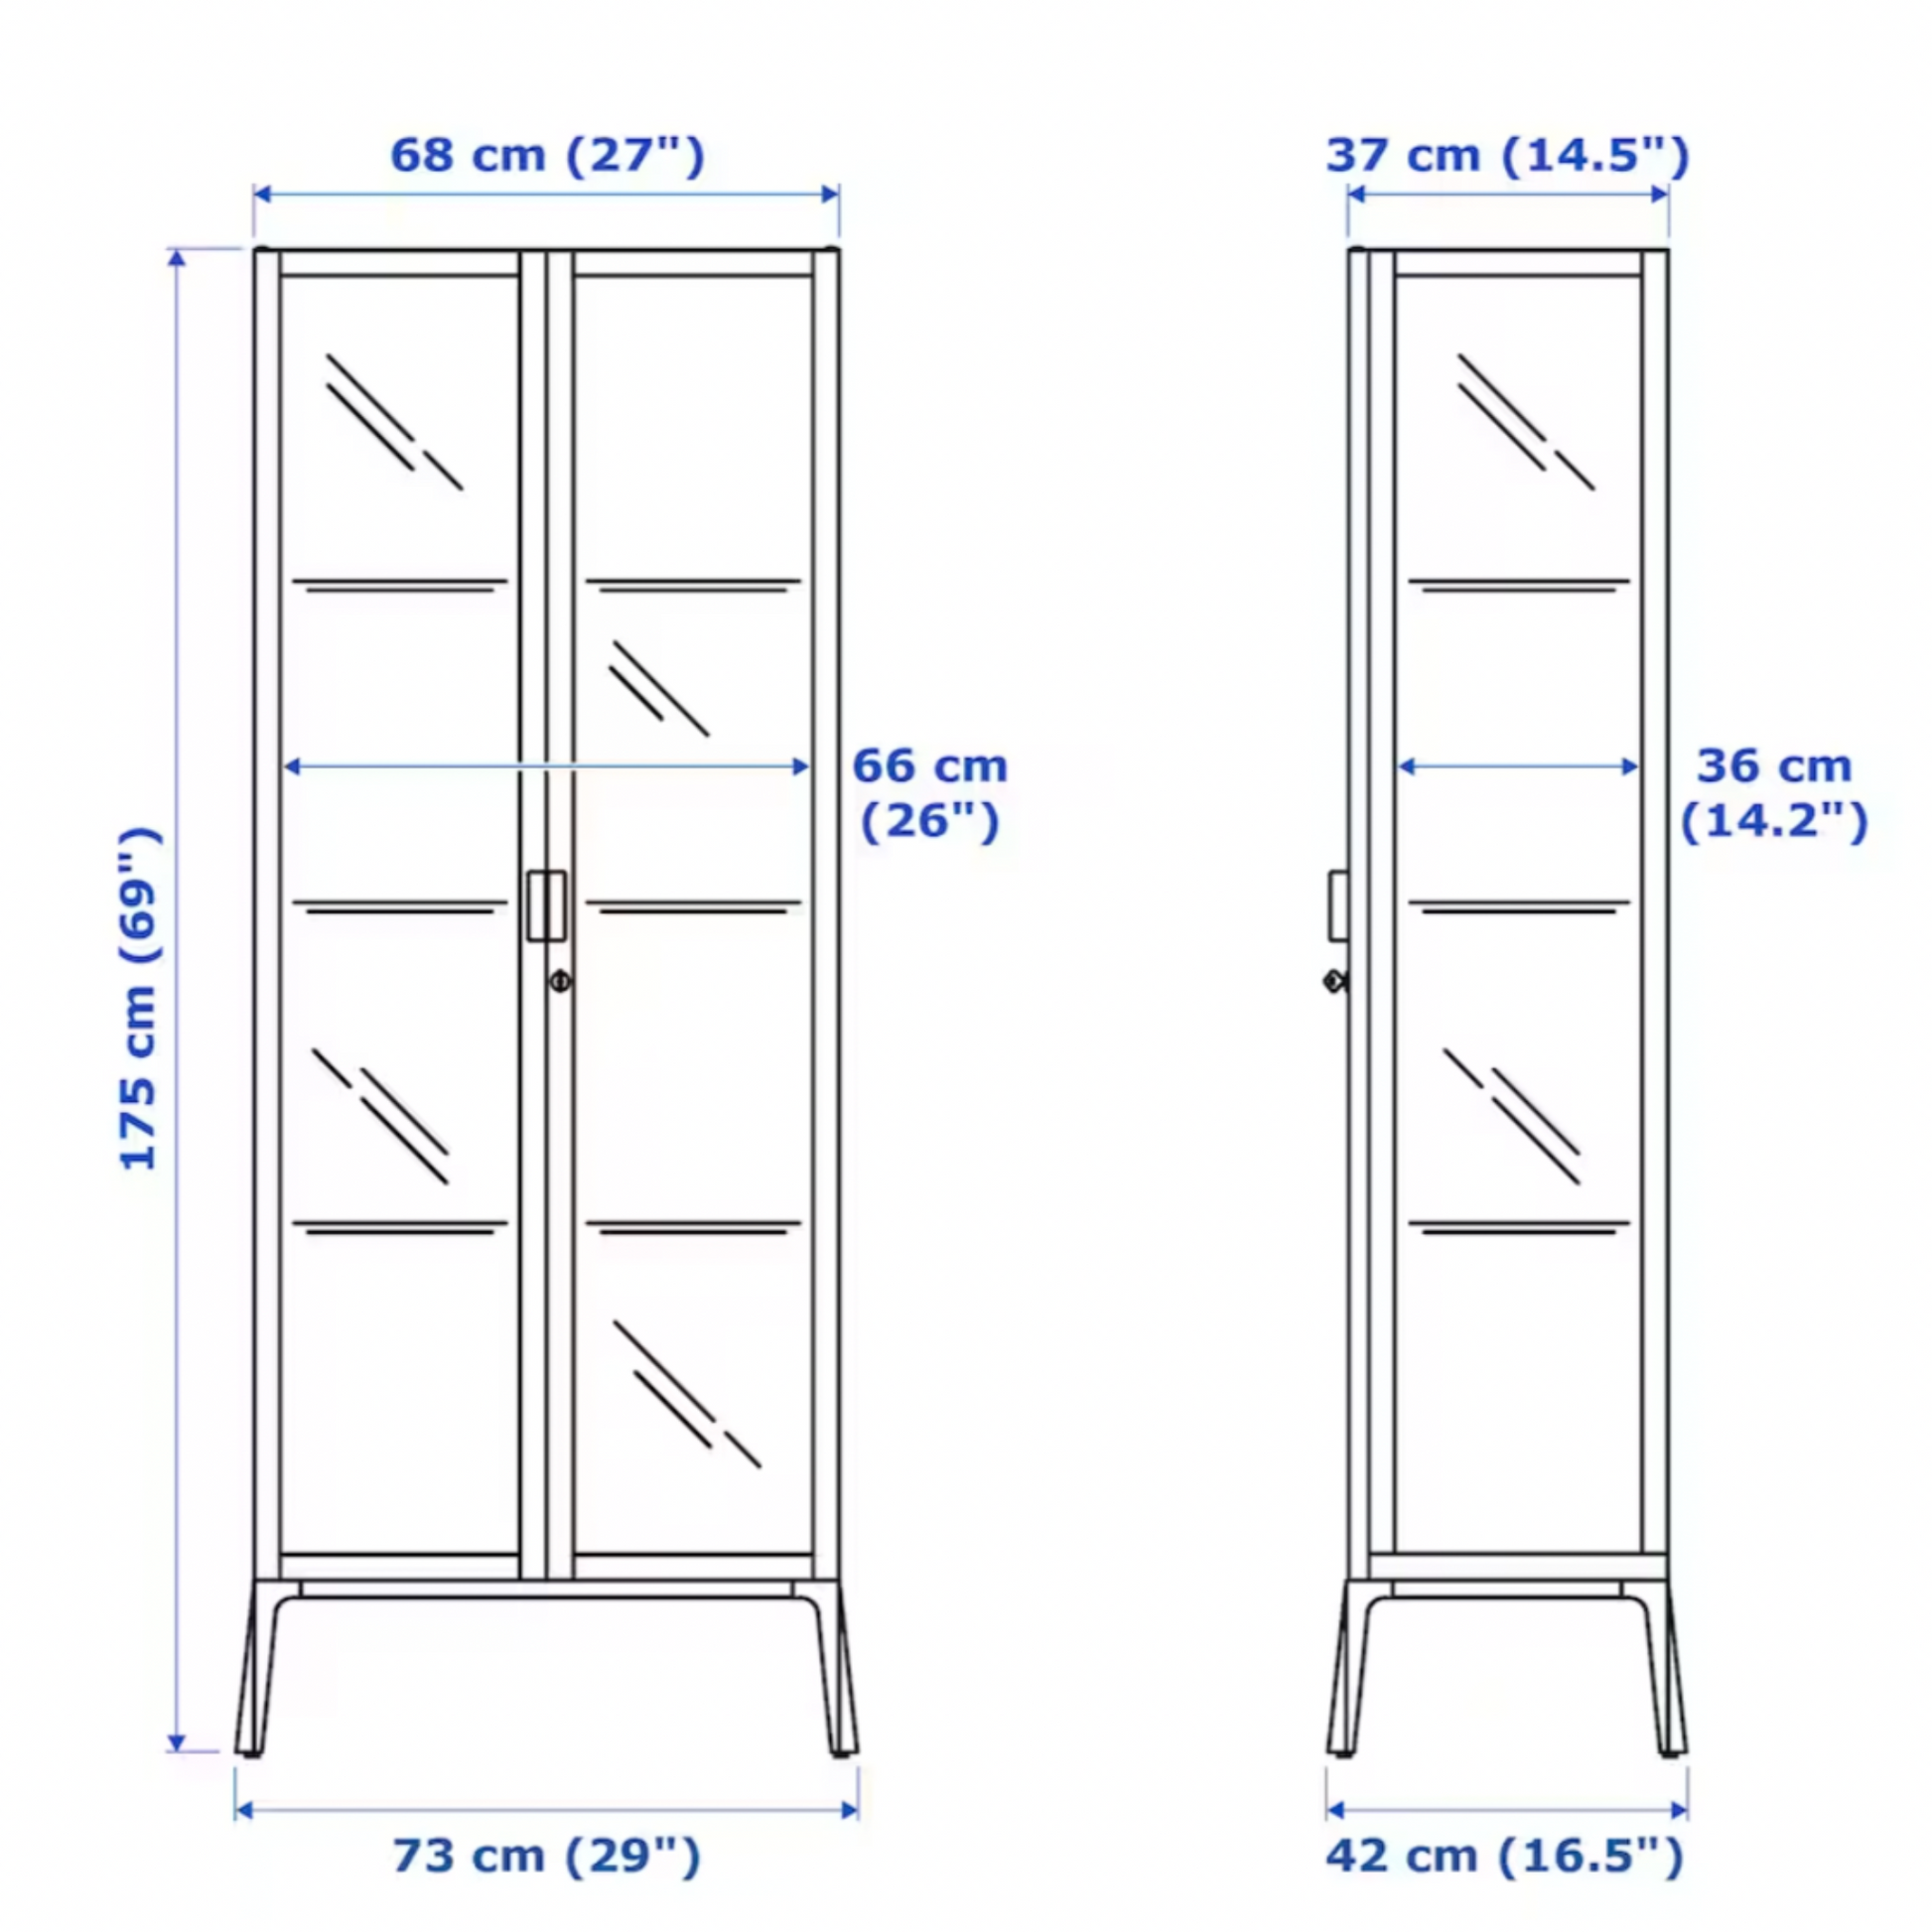 IKEA Milsbo Glass Door Cabinet, 73x175 cm White (6589421518913)